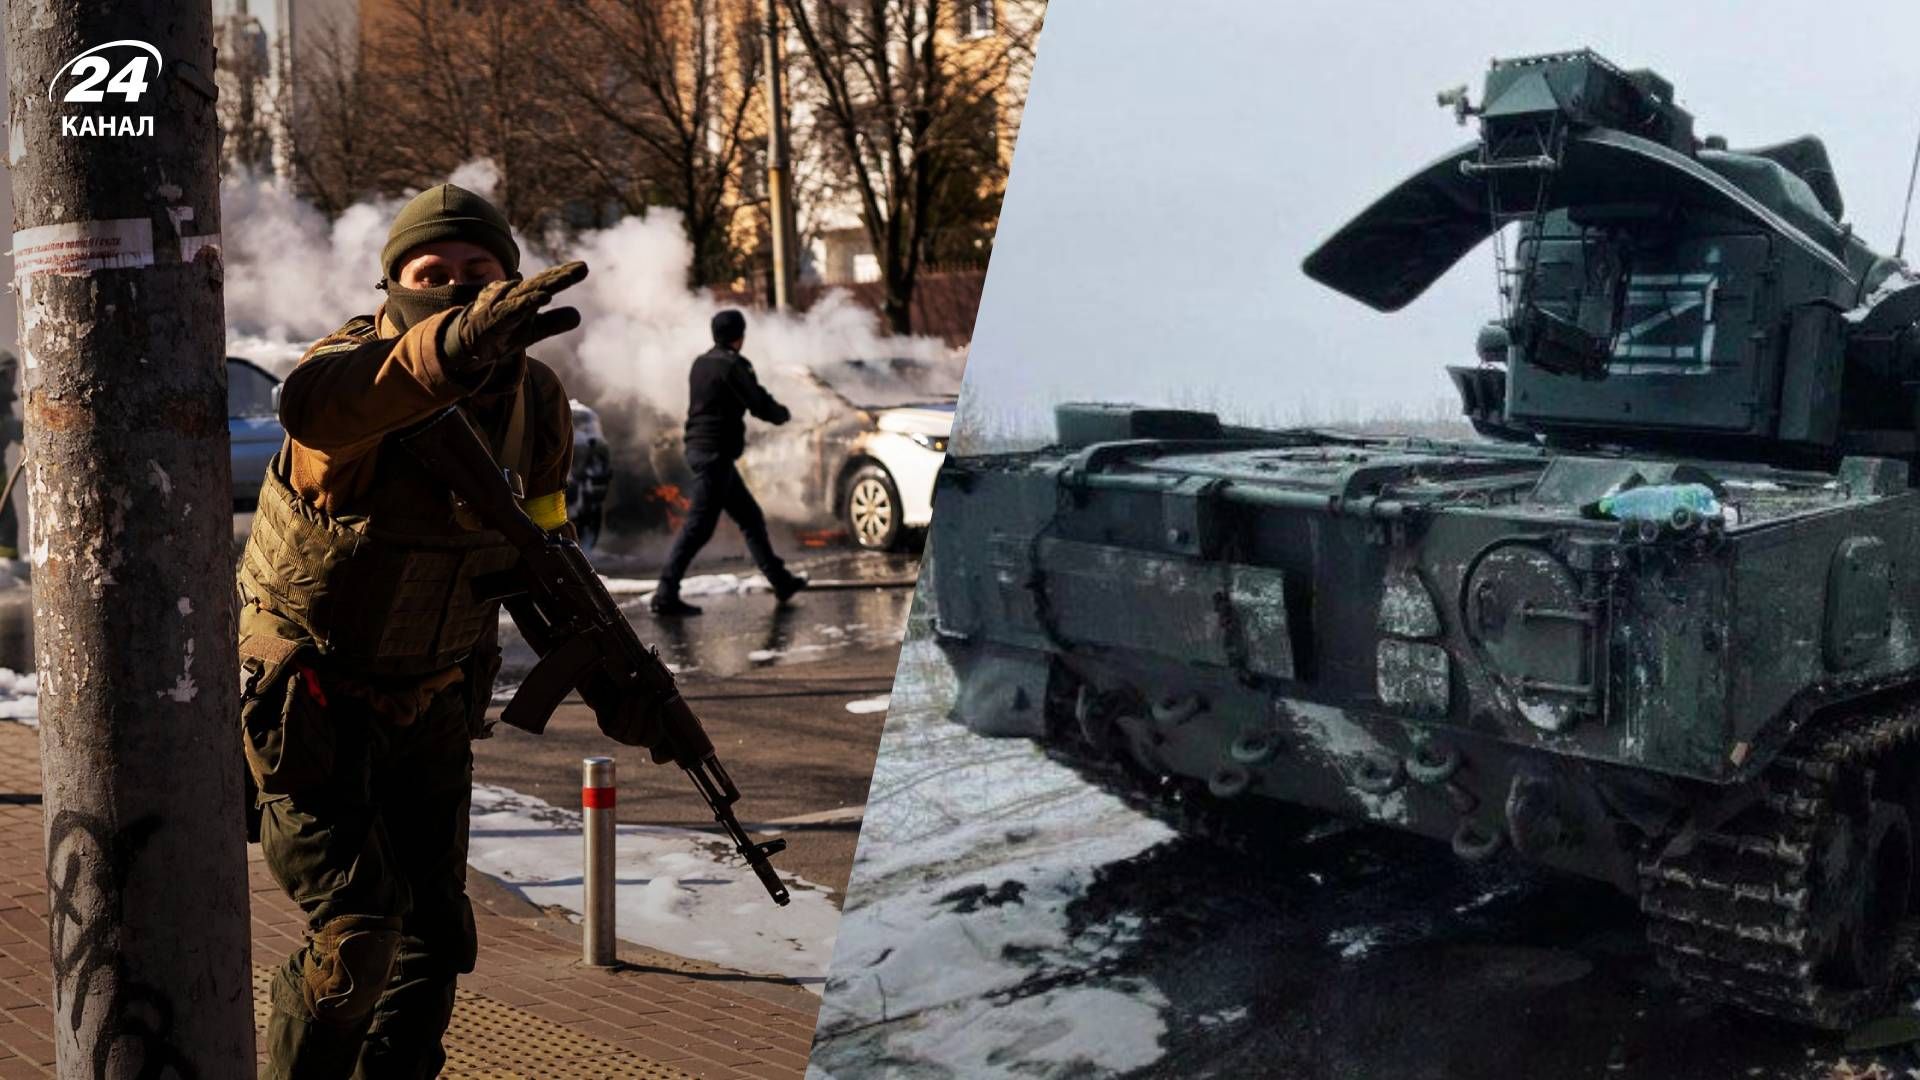 Самый длинный месяц в жизни: украинцы в сети вспоминают события февраля - 24 Канал